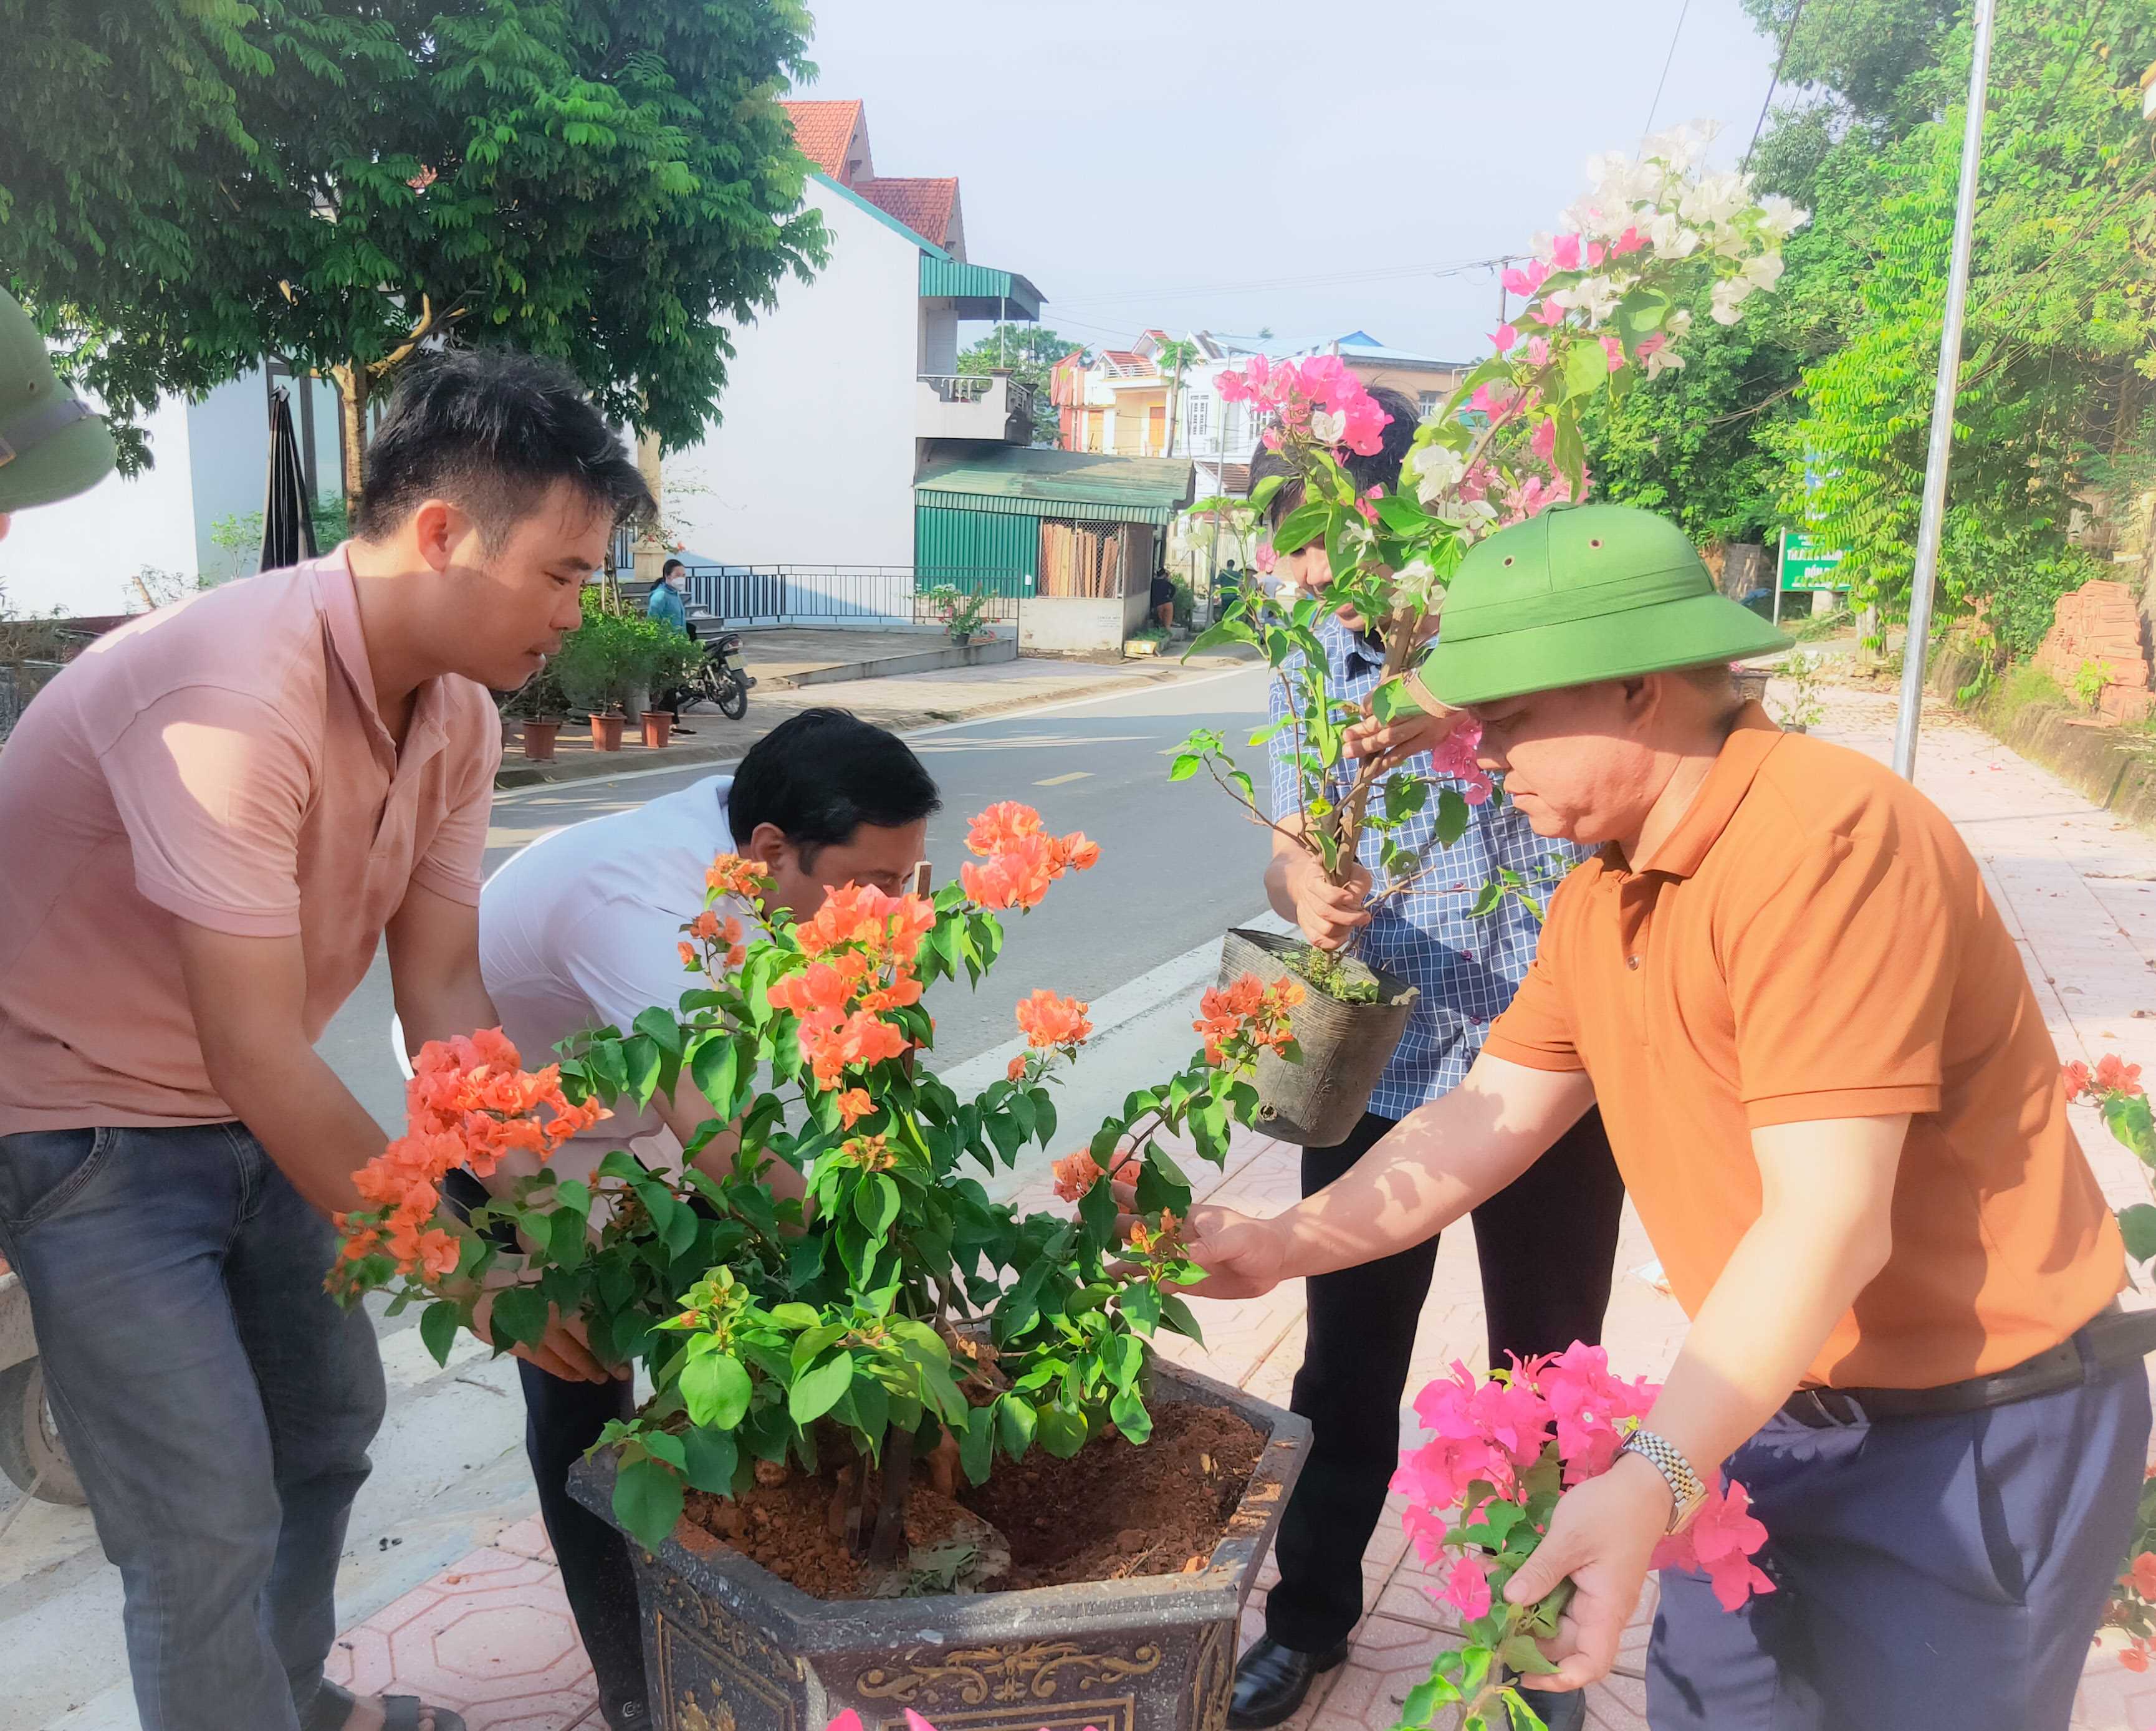 Nhân dân xã Đồn Đạc trồng hoa giấy để xây dựng tuyến đường nông thôn sáng - xanh - sạch - đẹp.